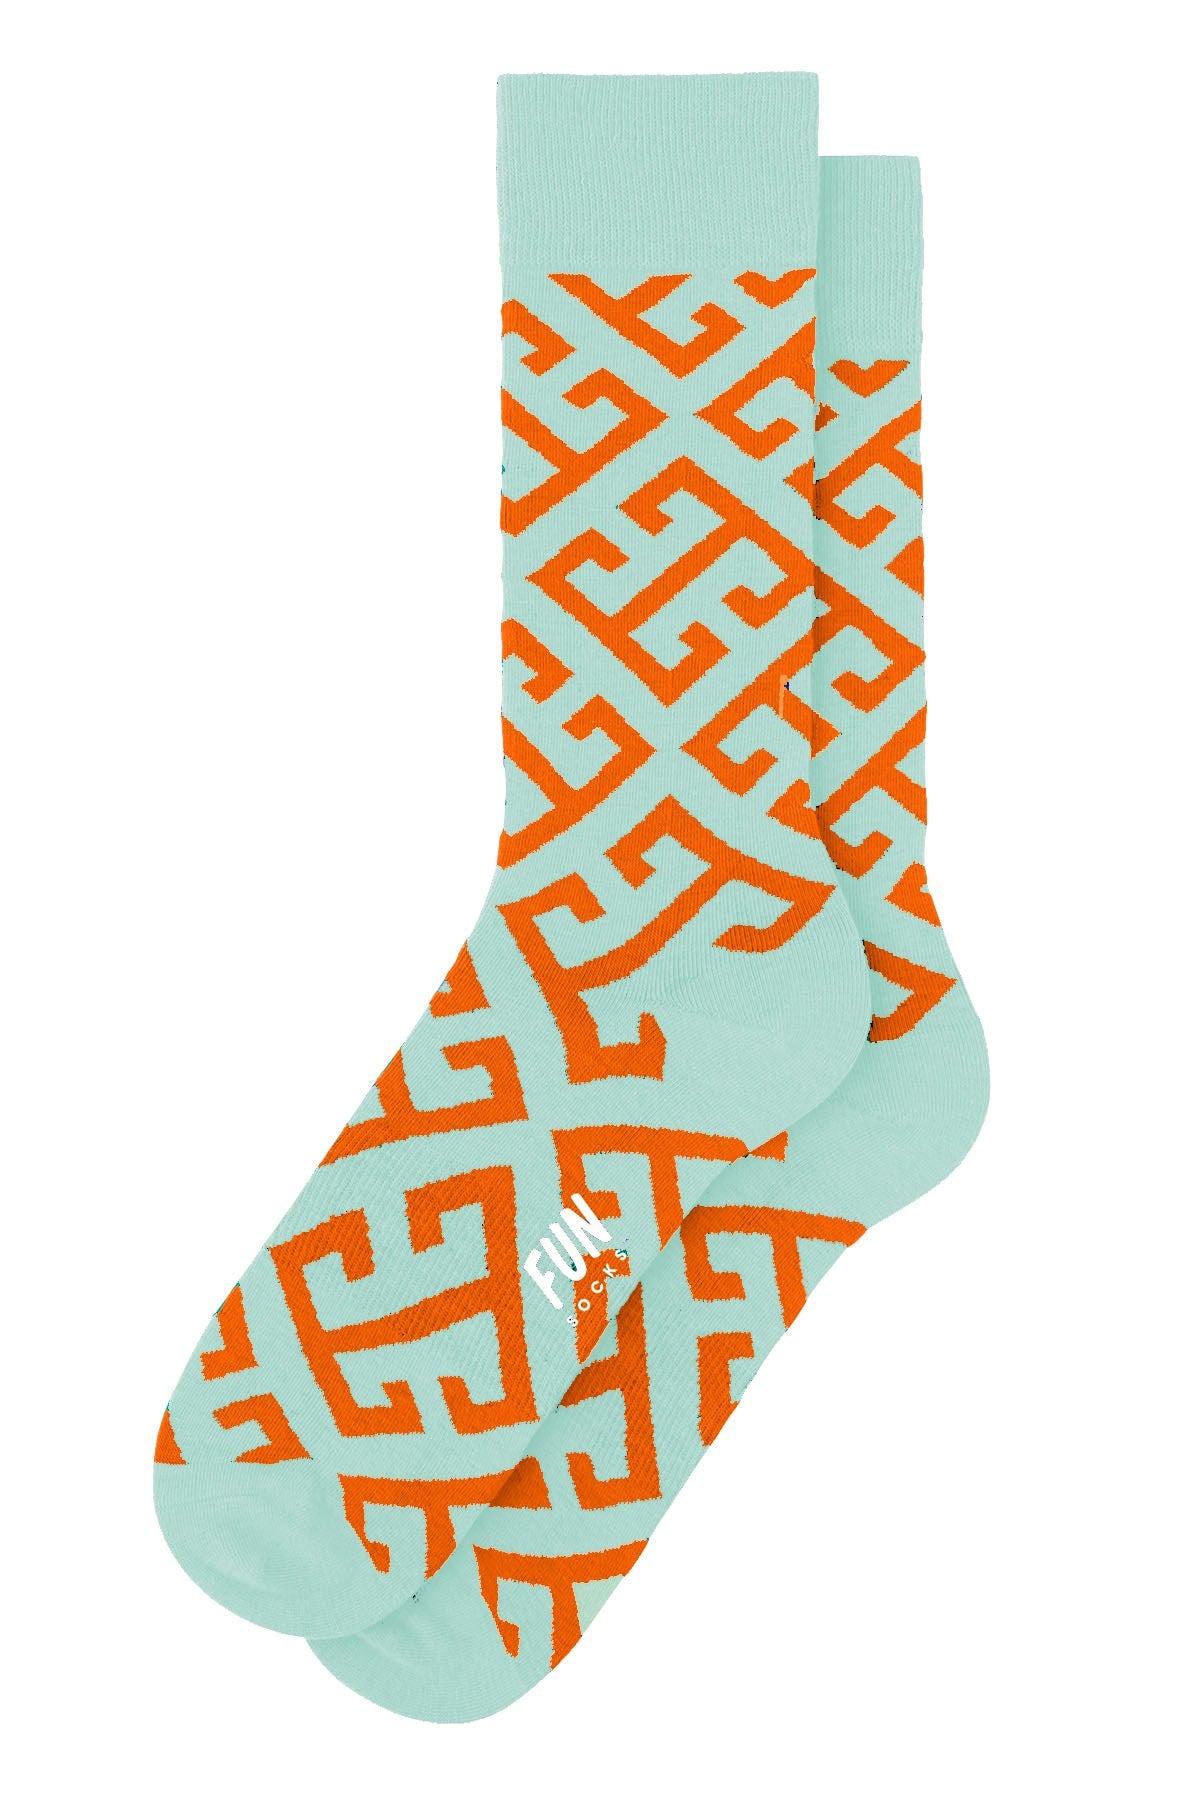 Fun Socks Seafoam/Orange Key Geo Crew Socks